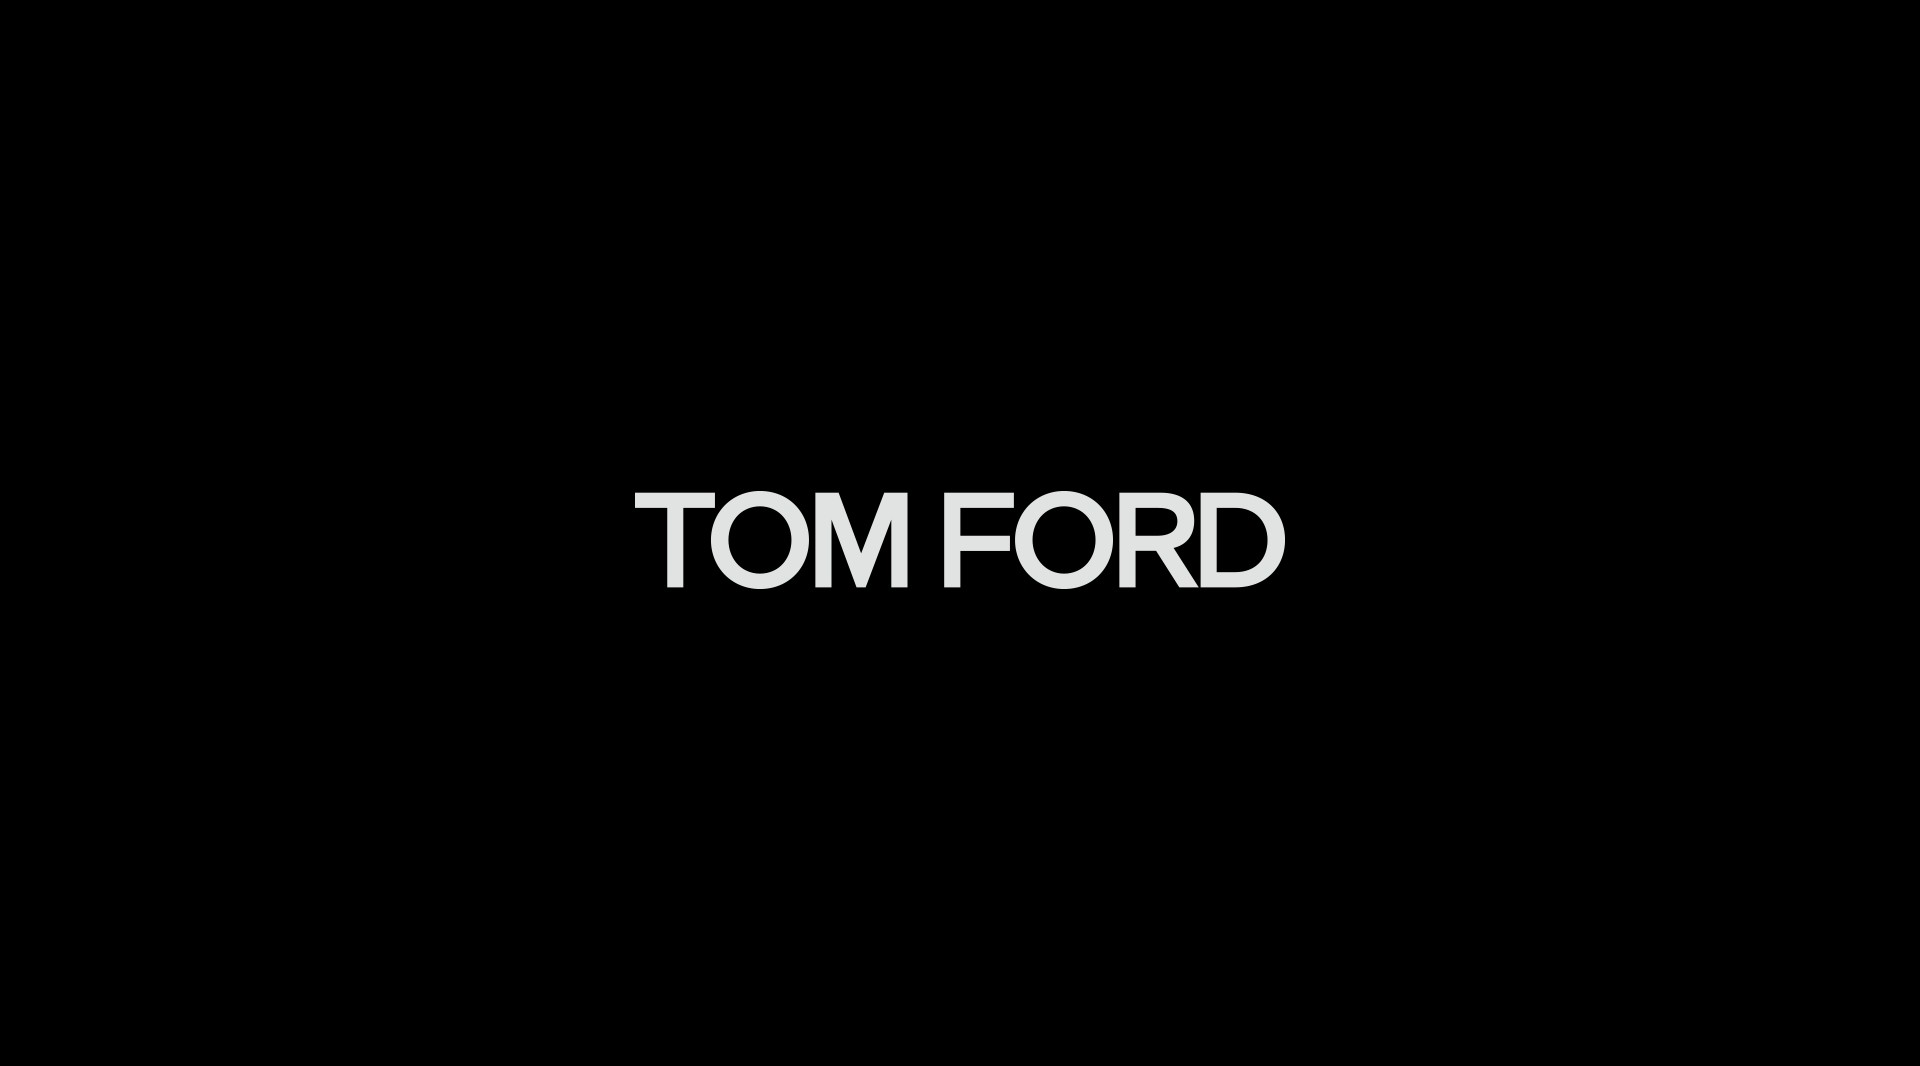 Tom Ford 双十一奢金系列 明星篇 